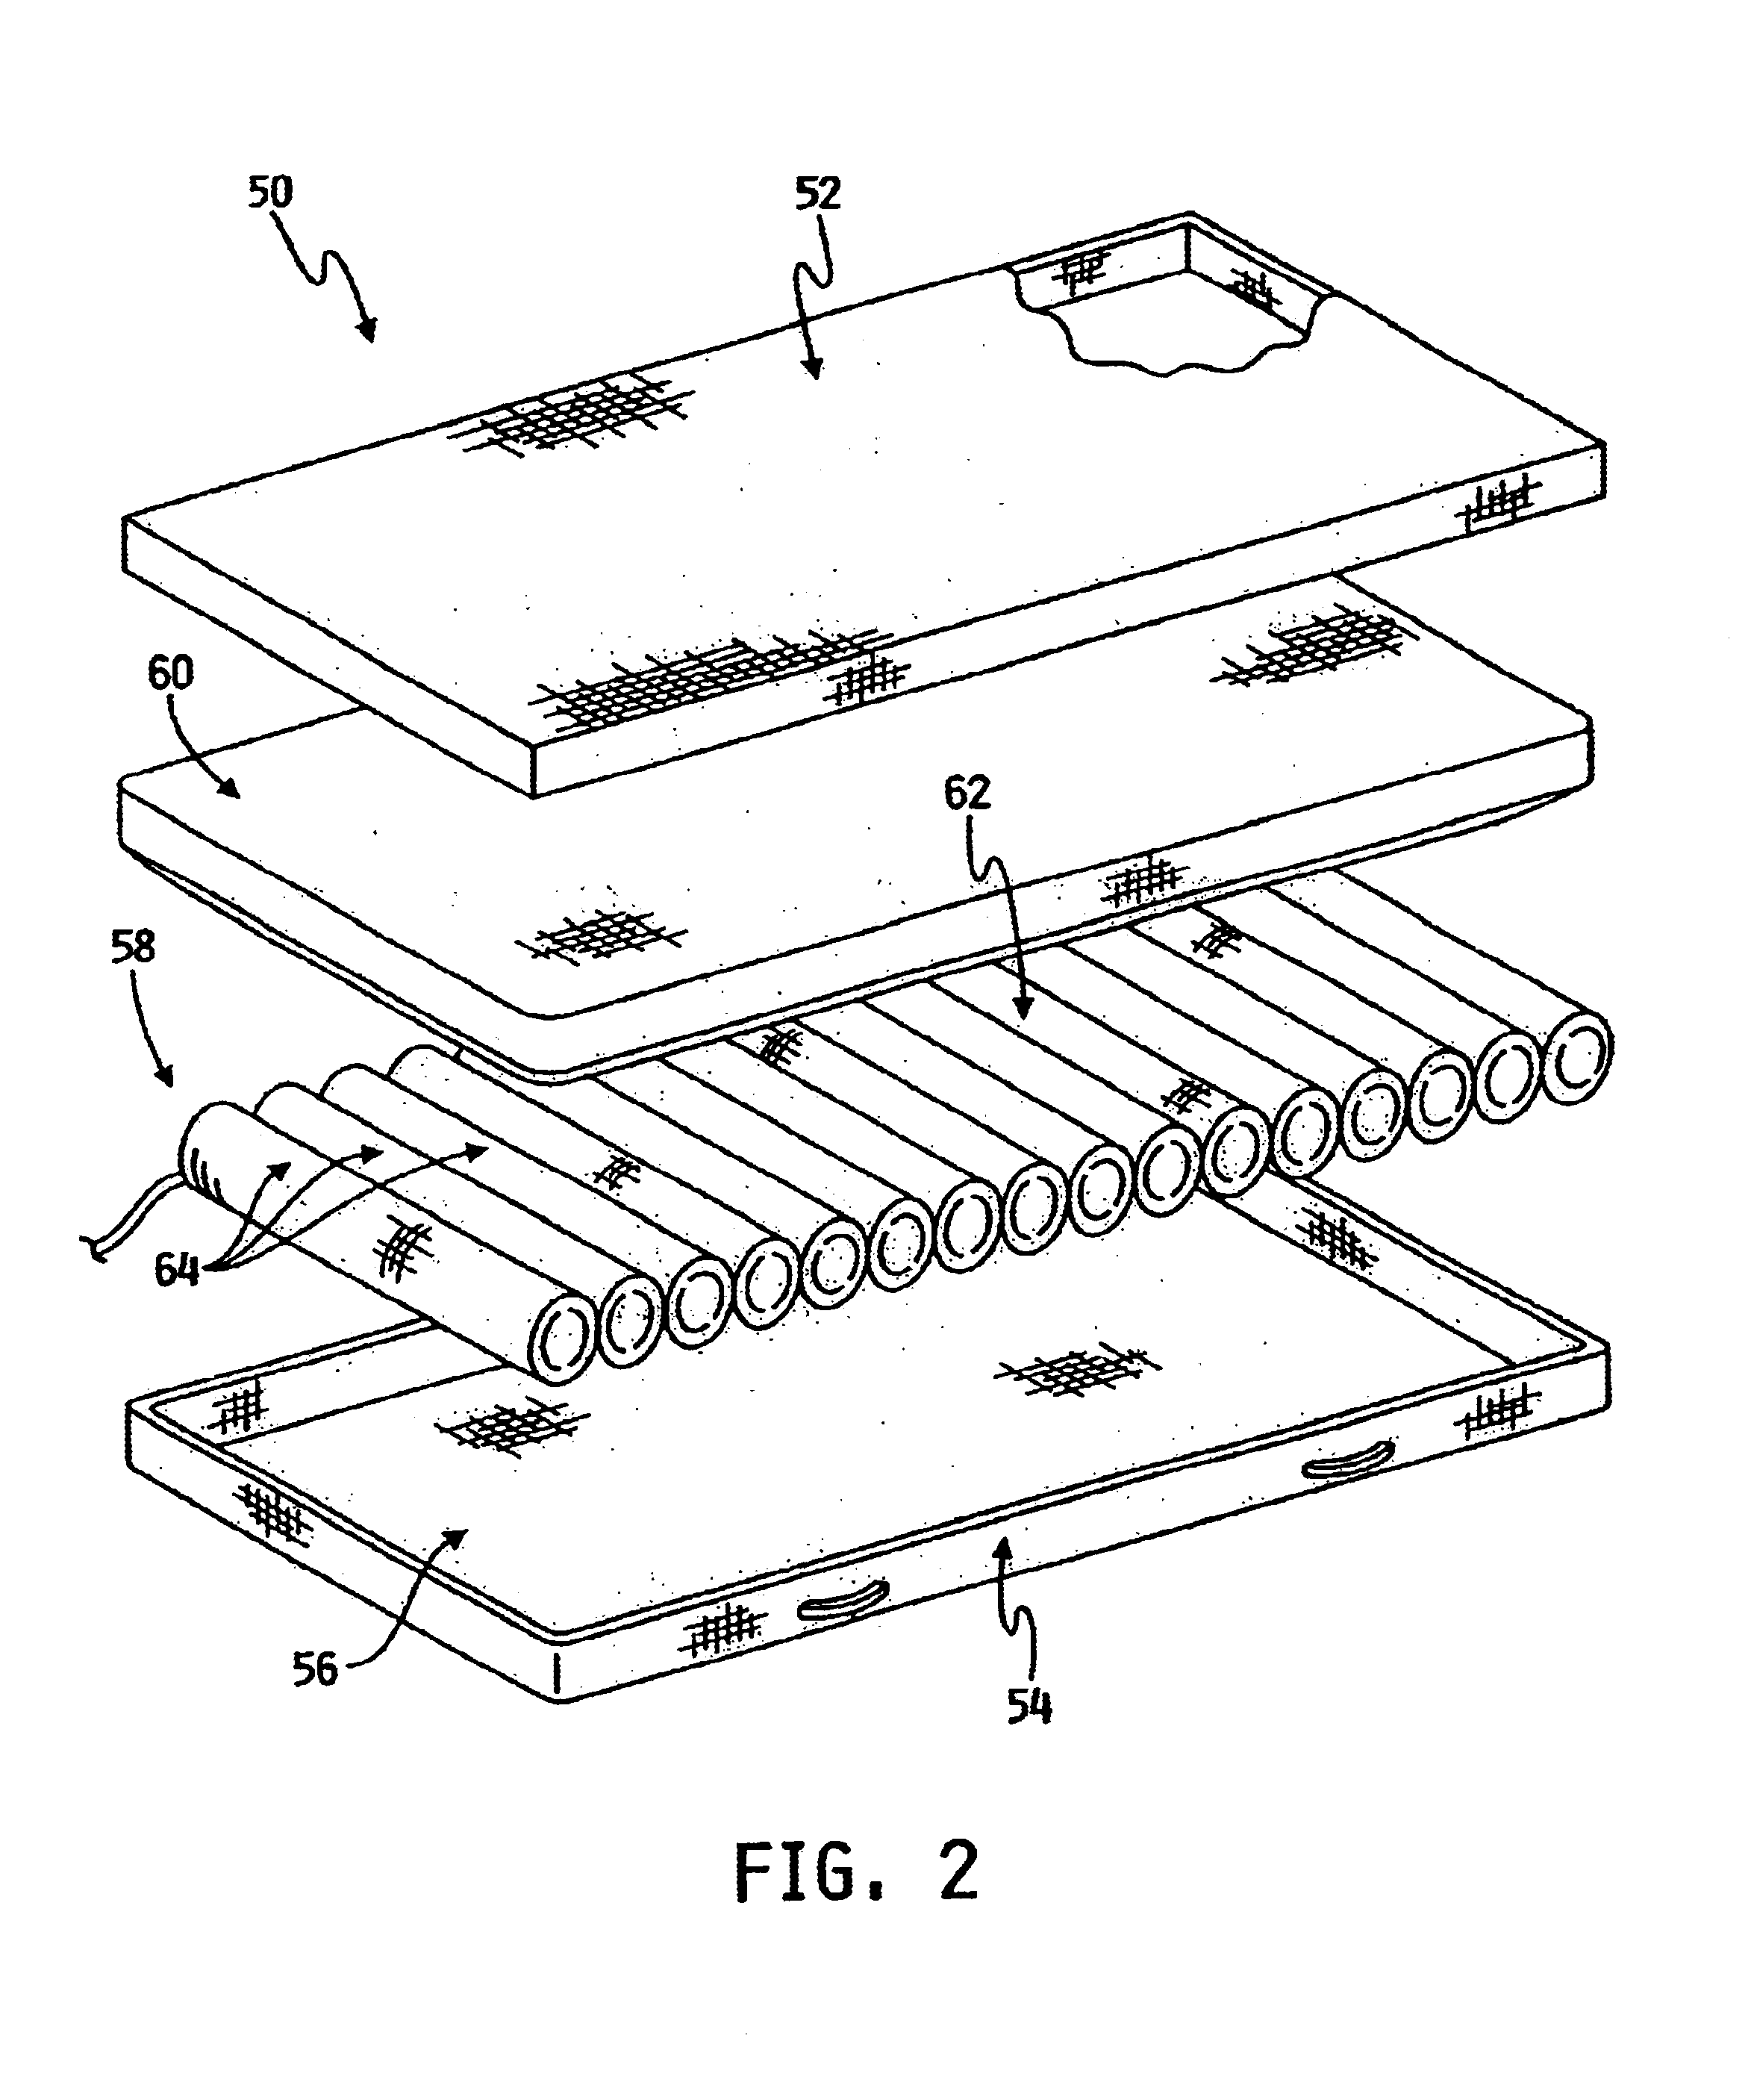 Self-sealing mattress structure